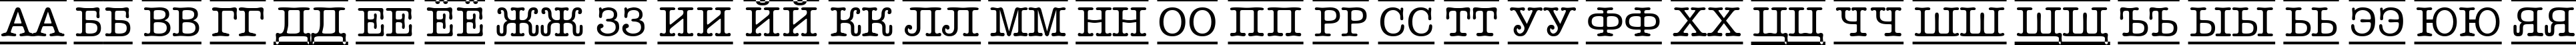 Пример написания русского алфавита шрифтом a_OldTyperDcFr